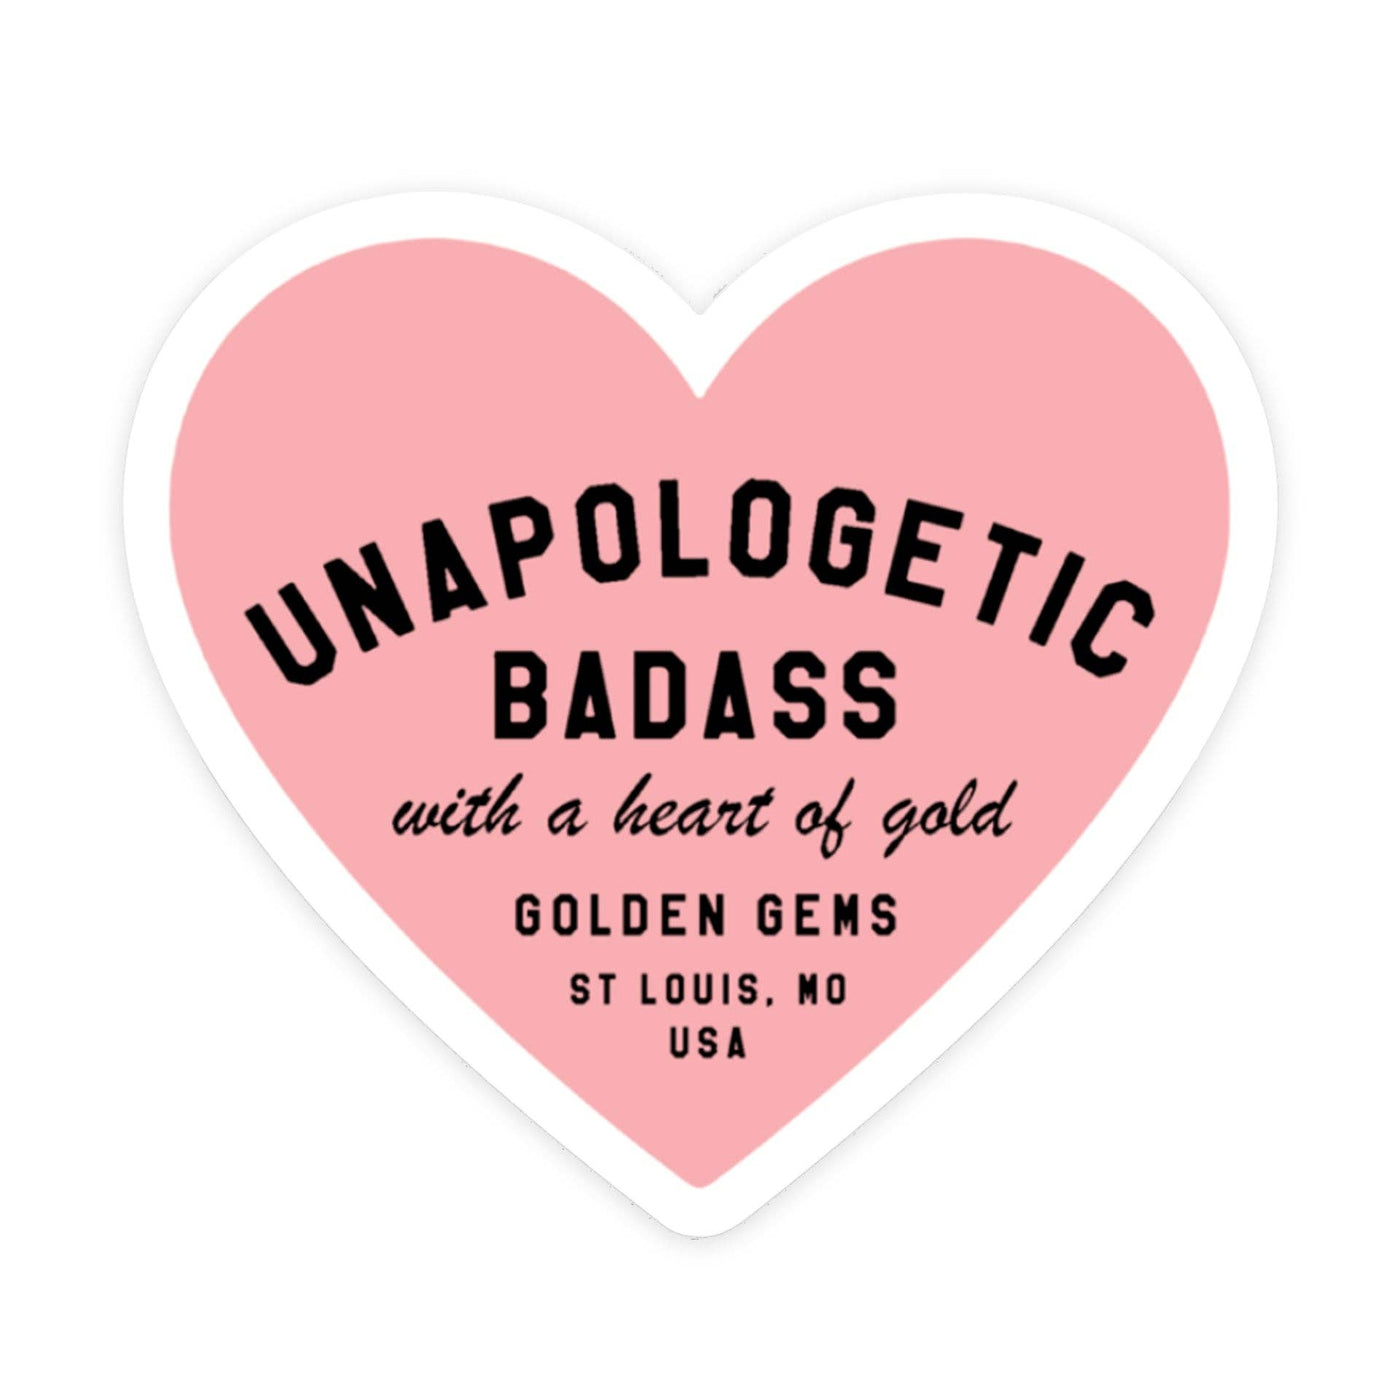 Golden Gems - Unapologetic Badass Heart Sticker